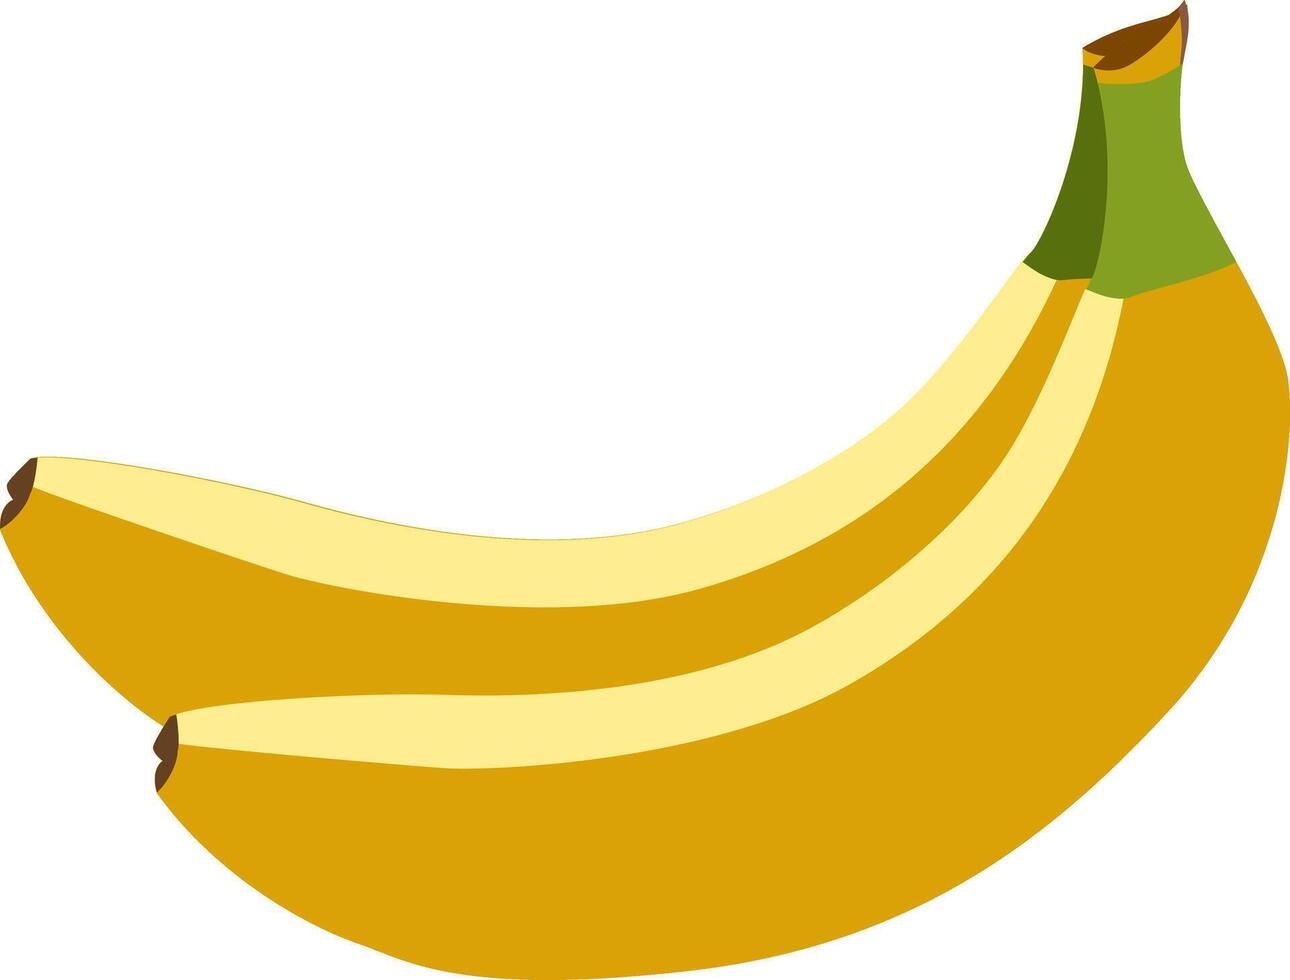 banaan schoonheid - een visueel aantrekkelijk uitbeelding van de esthetisch charme gevonden in de eenvoud van een banaan, geschikt voor divers ontwerp toepassingen. banaan vector illustratie.